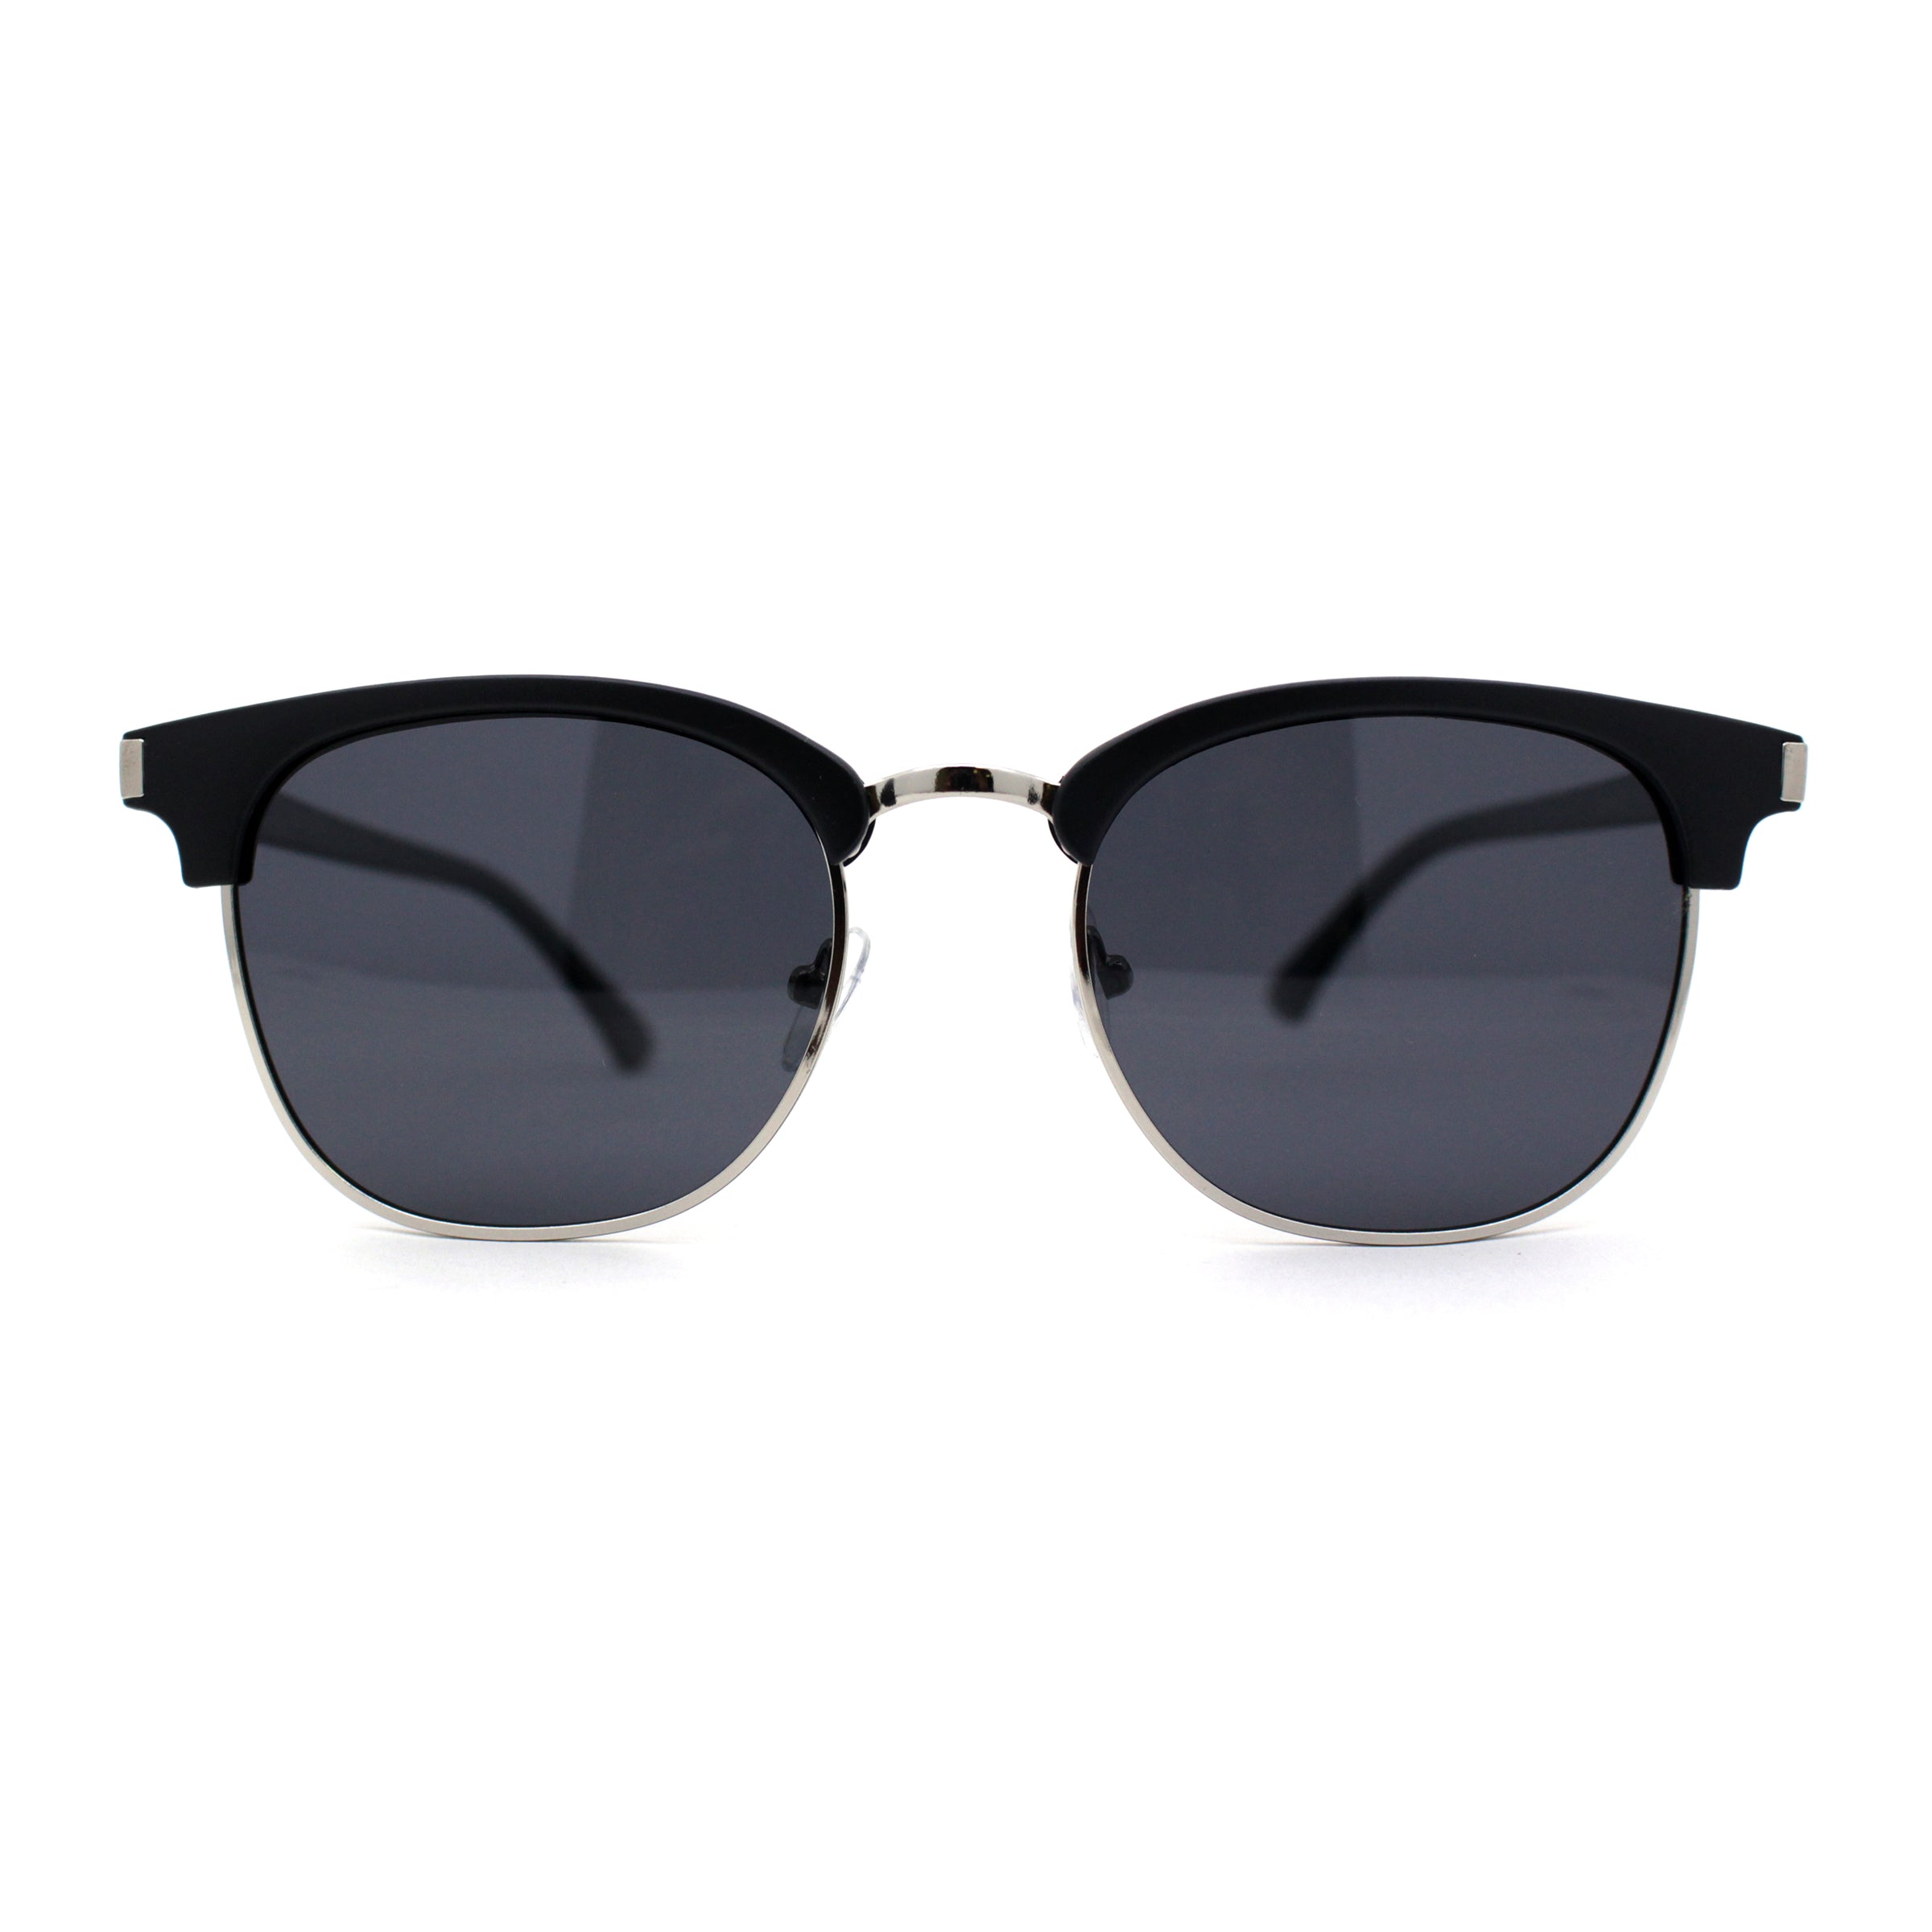 Grønland fordom Blind tillid Mens Polarized Lens Half Horn Rim Hipster Sunglasses – superawesome106